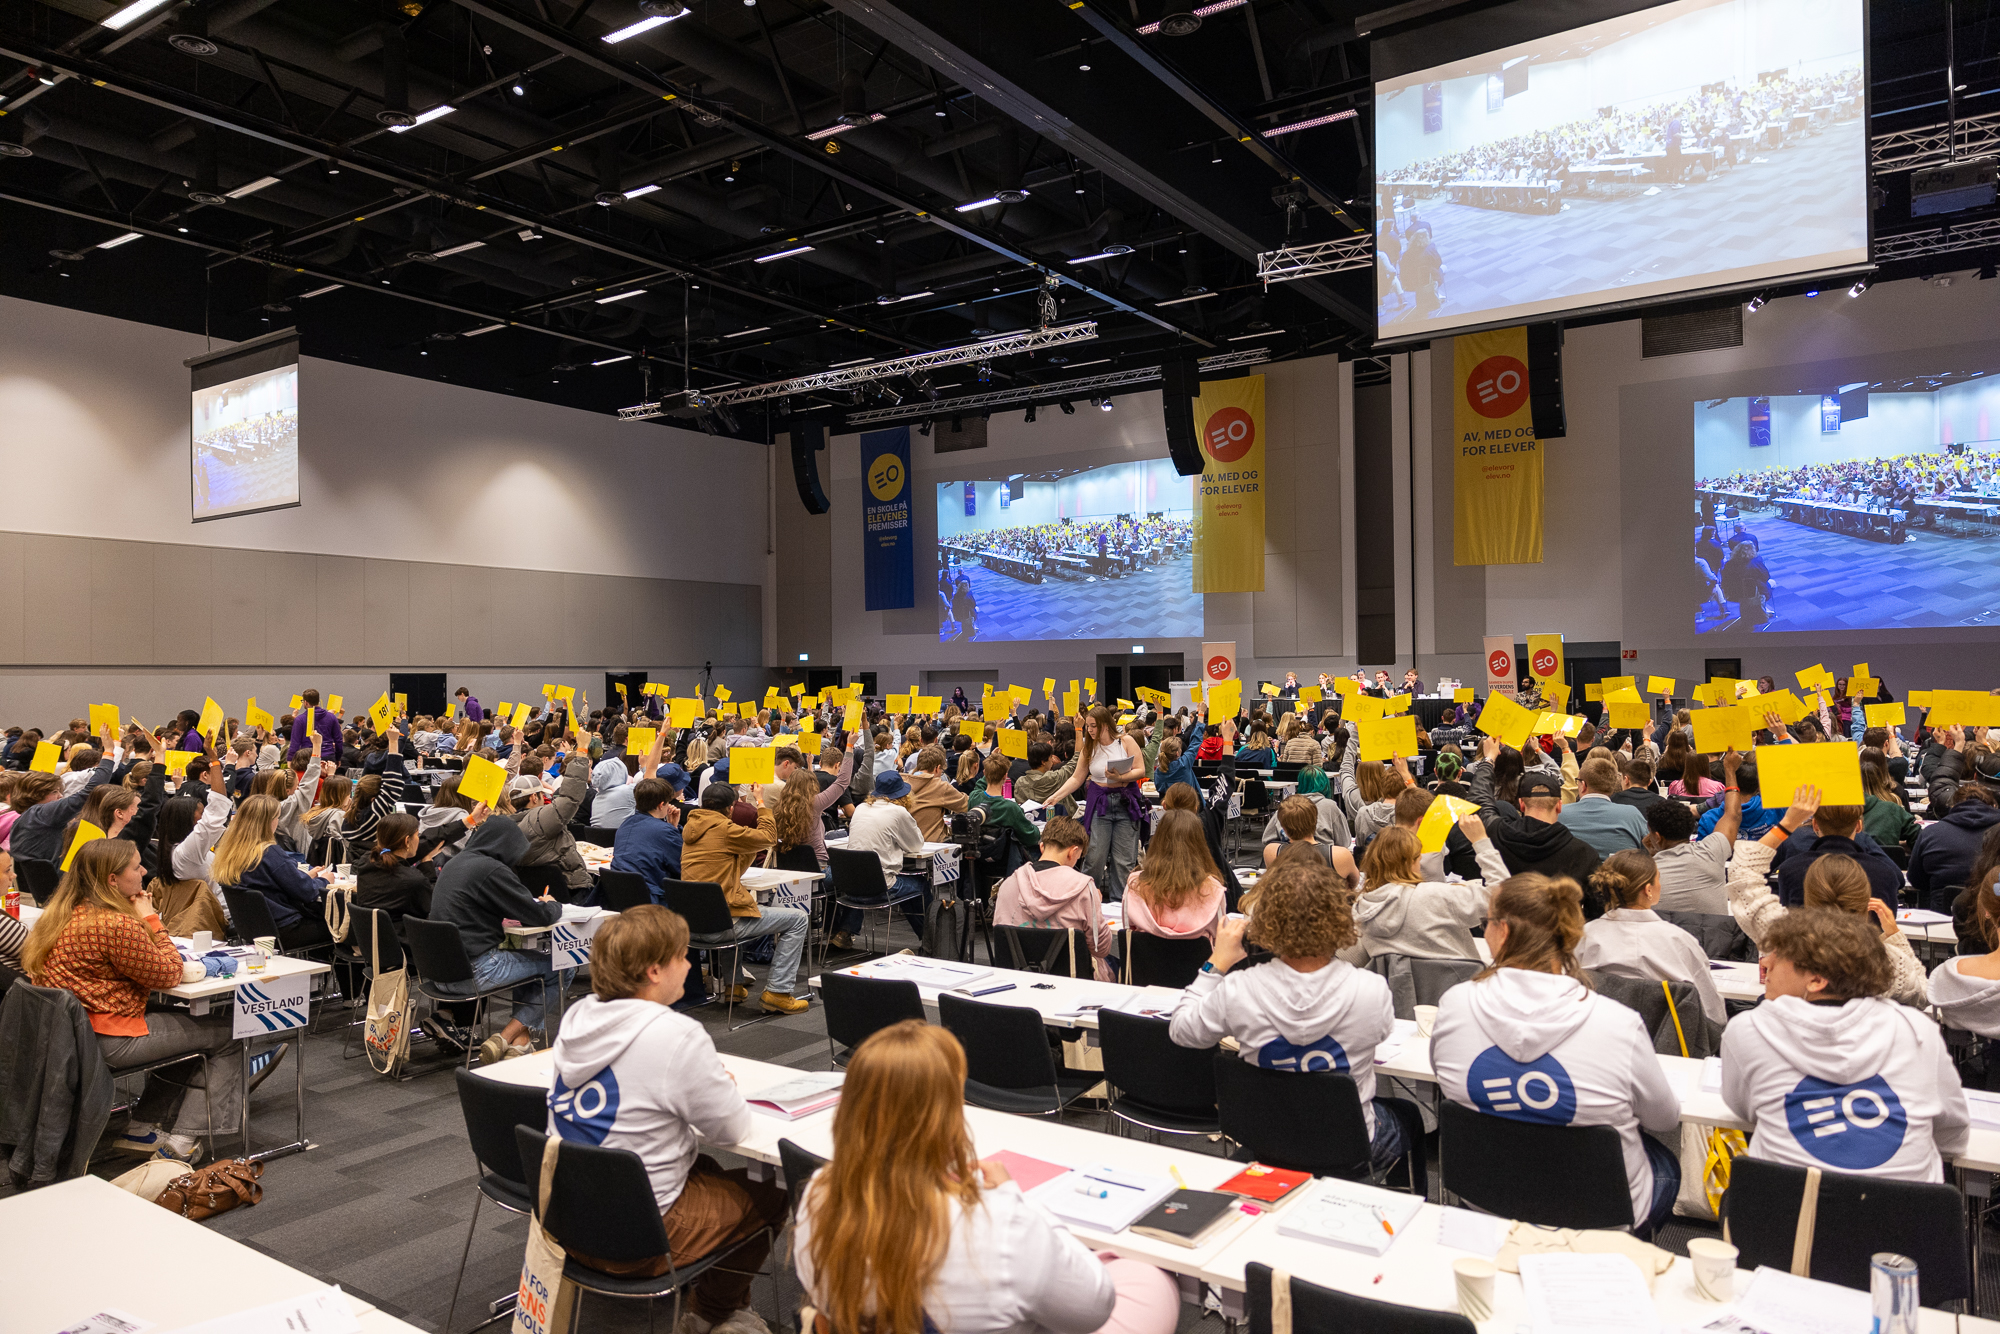 En stor forsamling ungdom sitter i en sal. Mange av dem holder opp et gult ark. Foto.